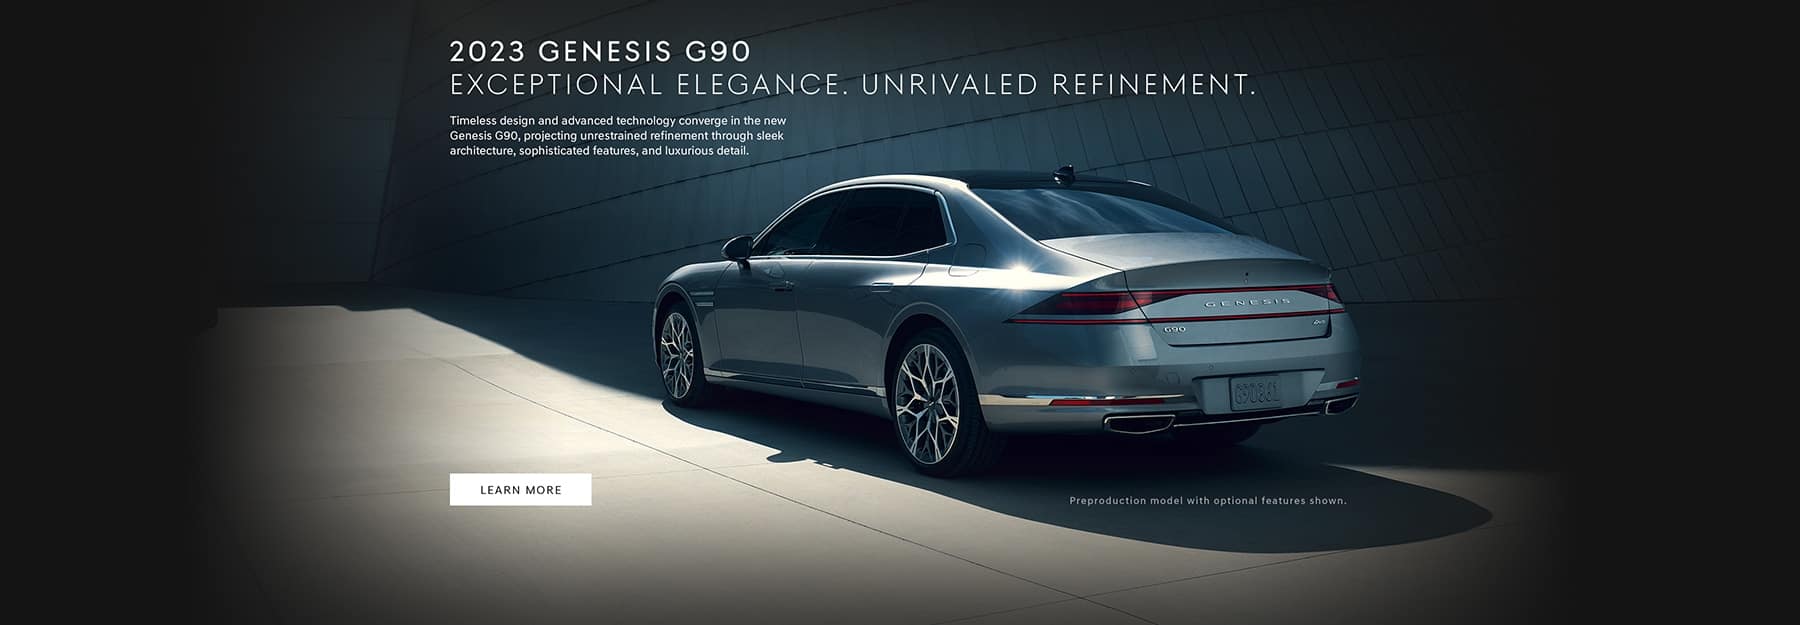 2020 Genesis G90 For Sale in Dearborn, MI